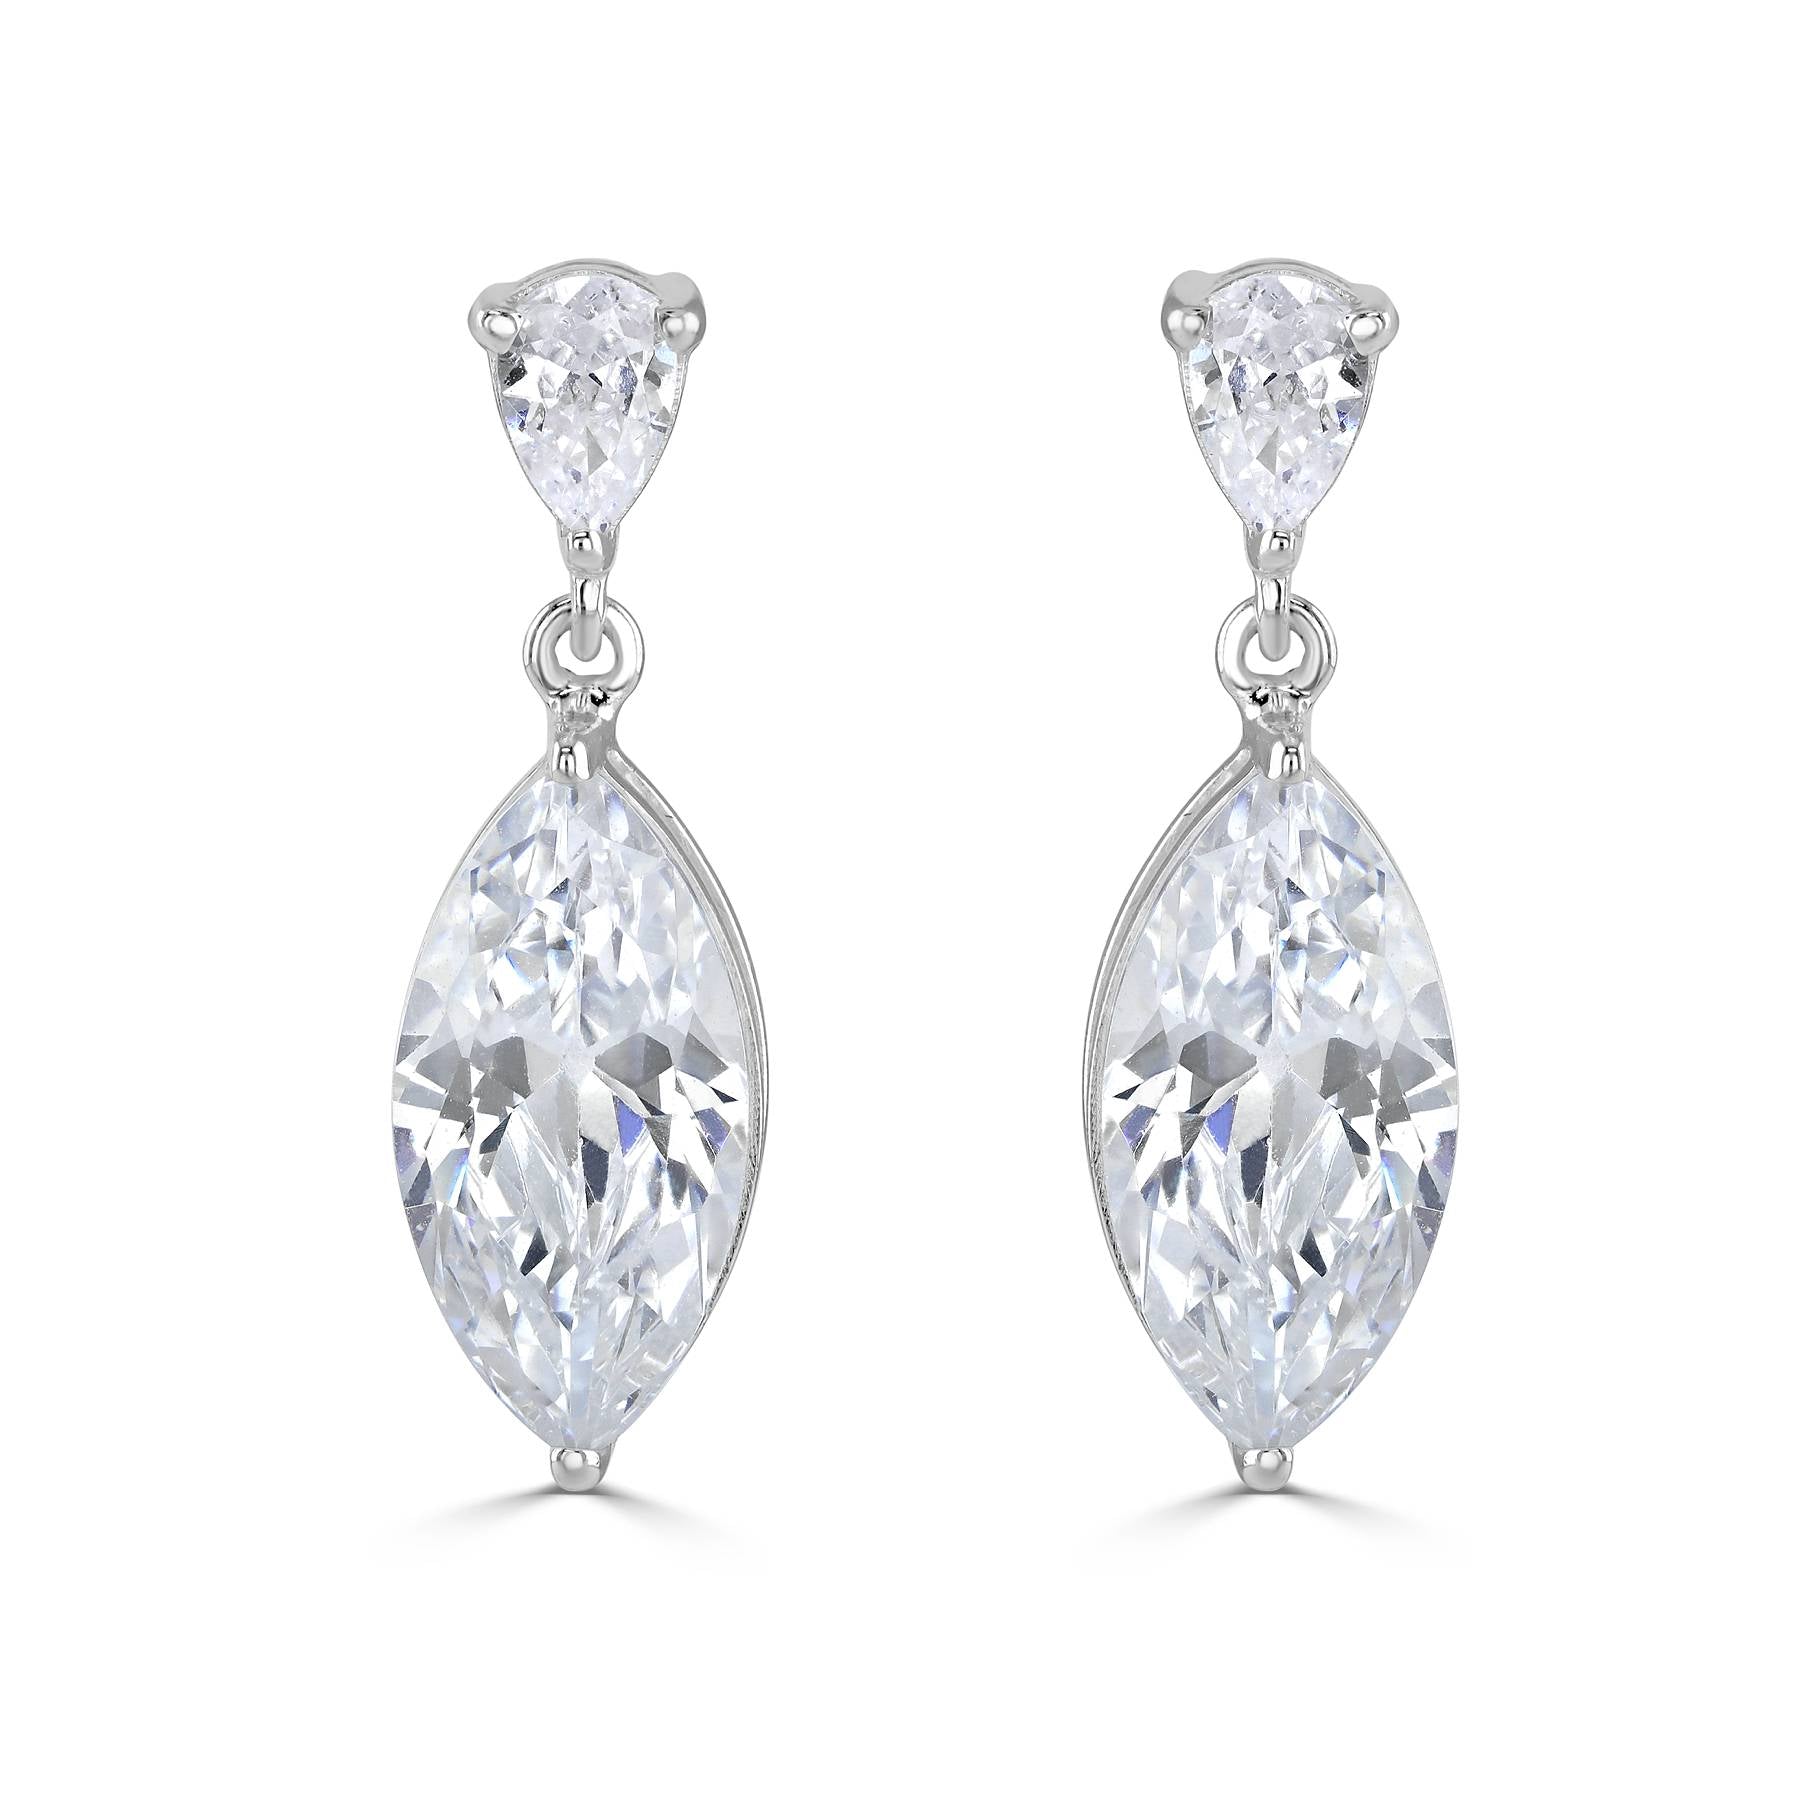 CHARIS // Silver crystal drop earrings